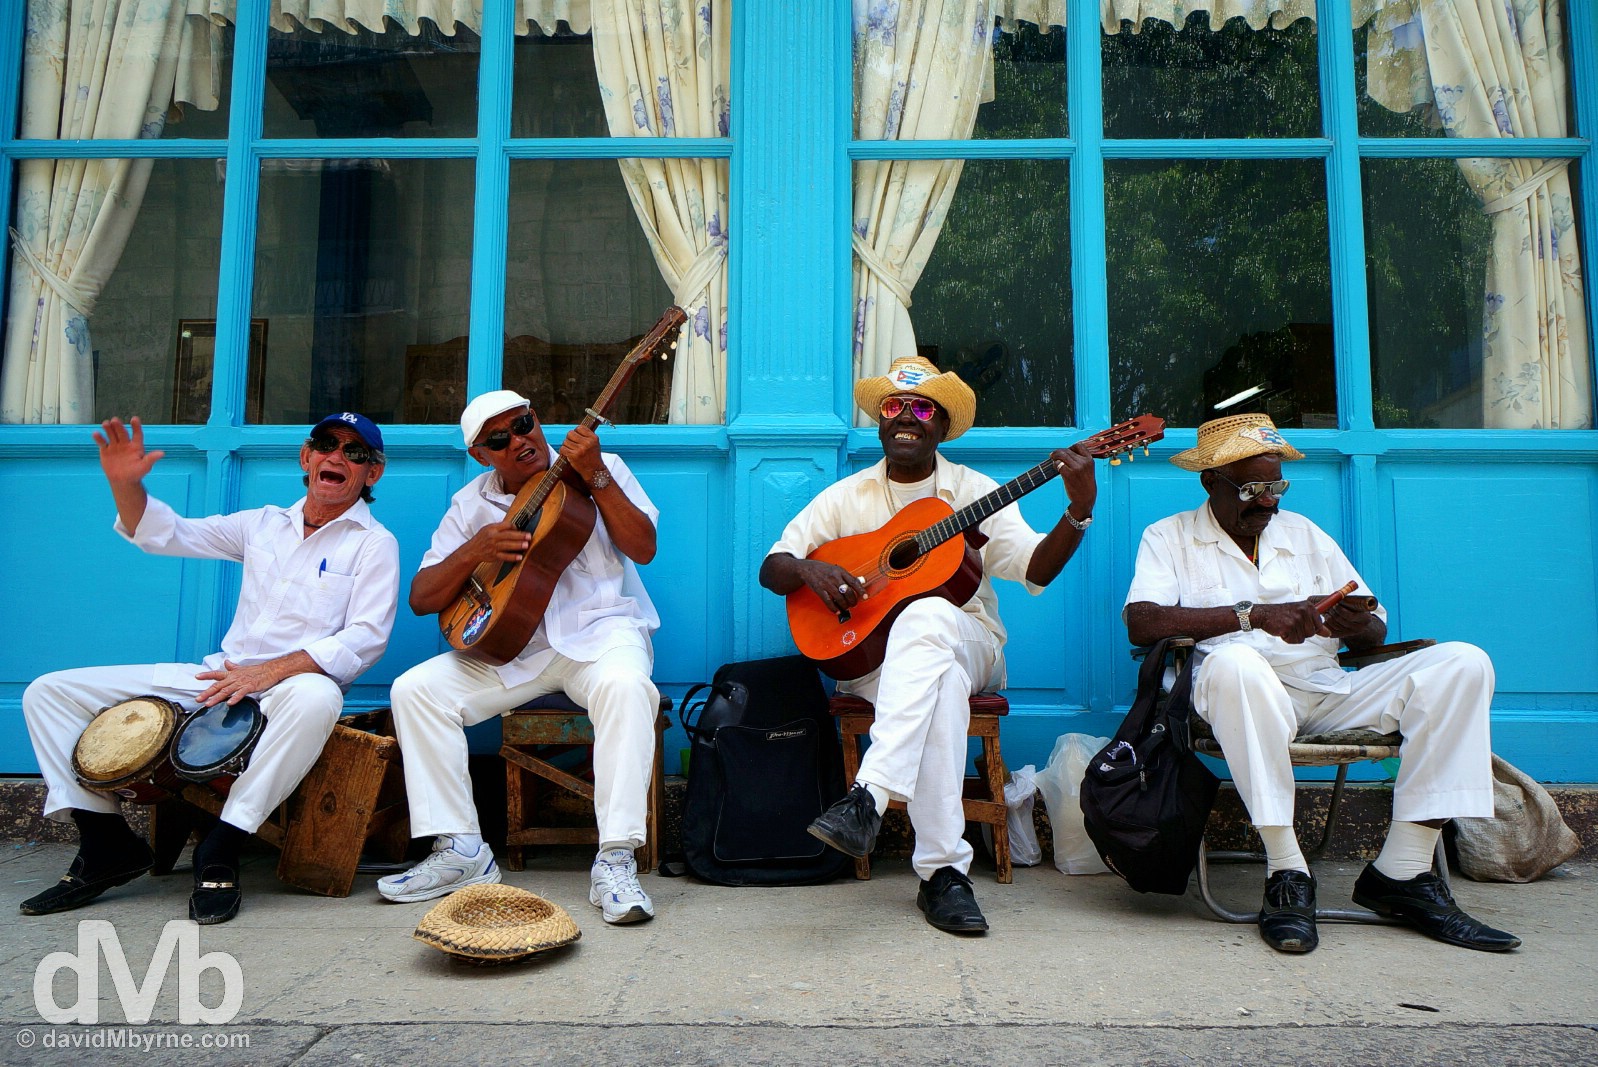 Musicians in Habana Vieja/Old Havana, Havana, Cuba. May 2, 2015.